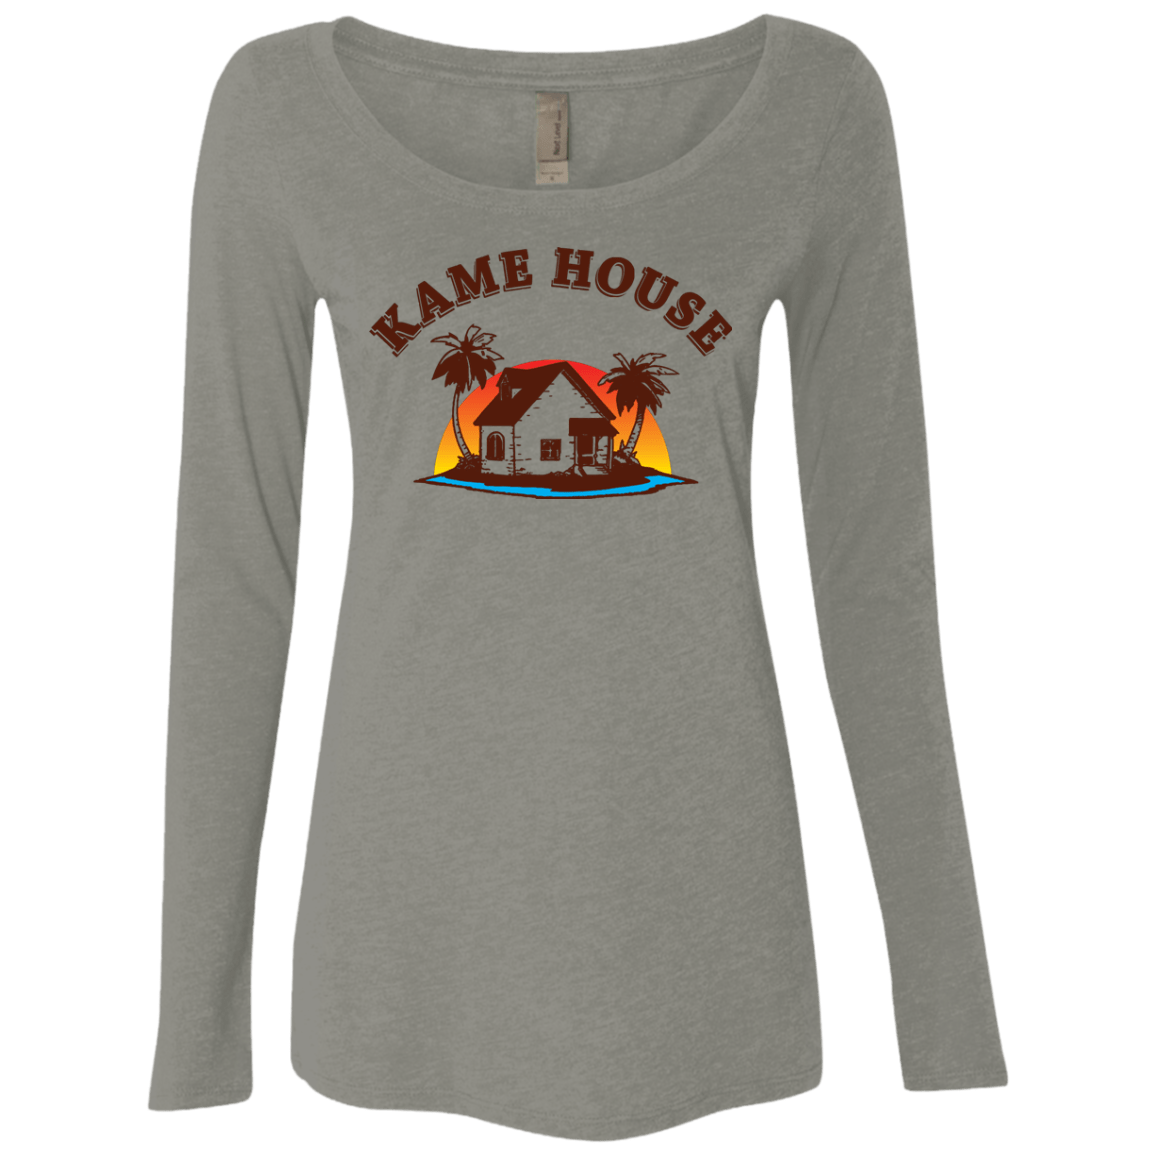 T-Shirts Venetian Grey / S Kame House Women's Triblend Long Sleeve Shirt